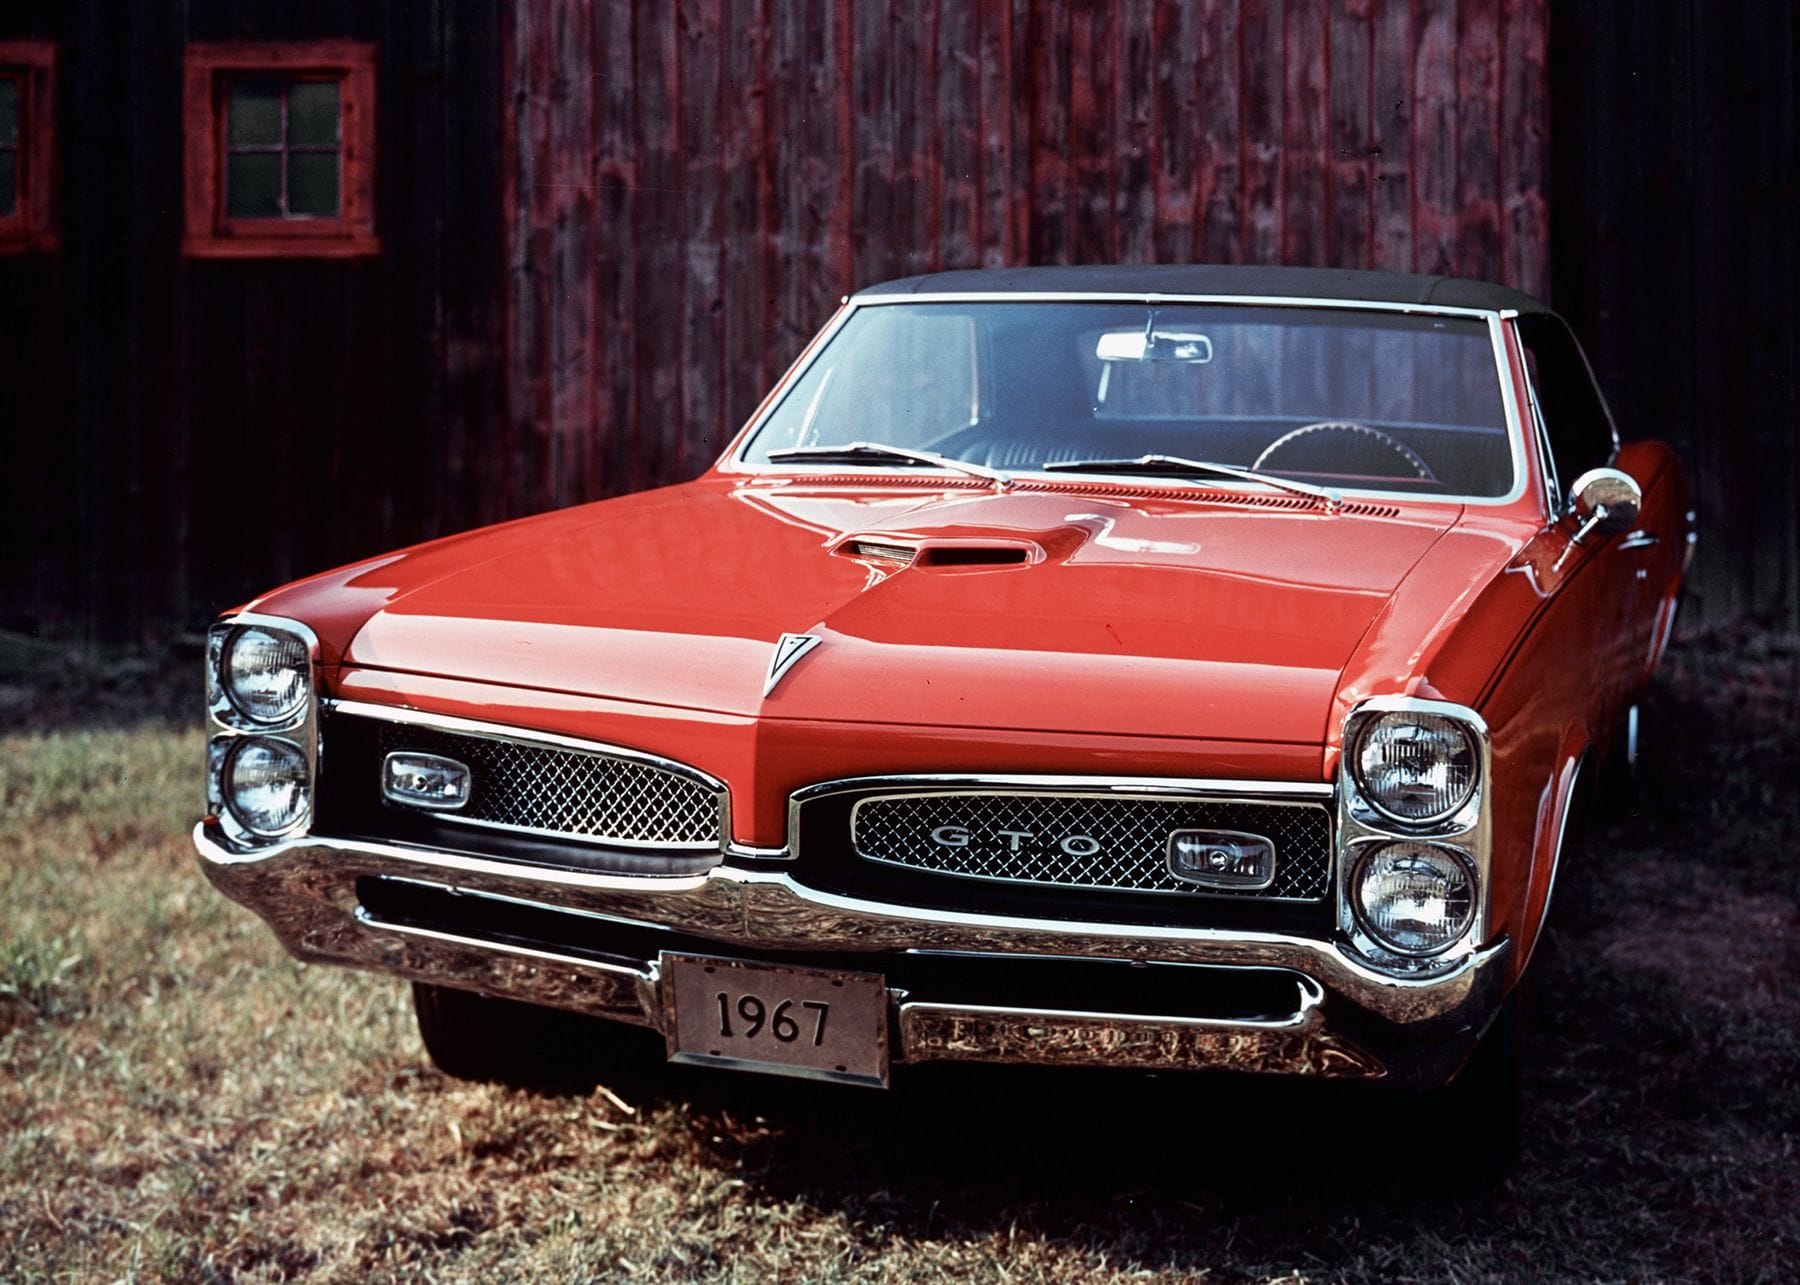 Der Pontiac GTO hatte rund 355 PS und 600 Nm Drehmoment.